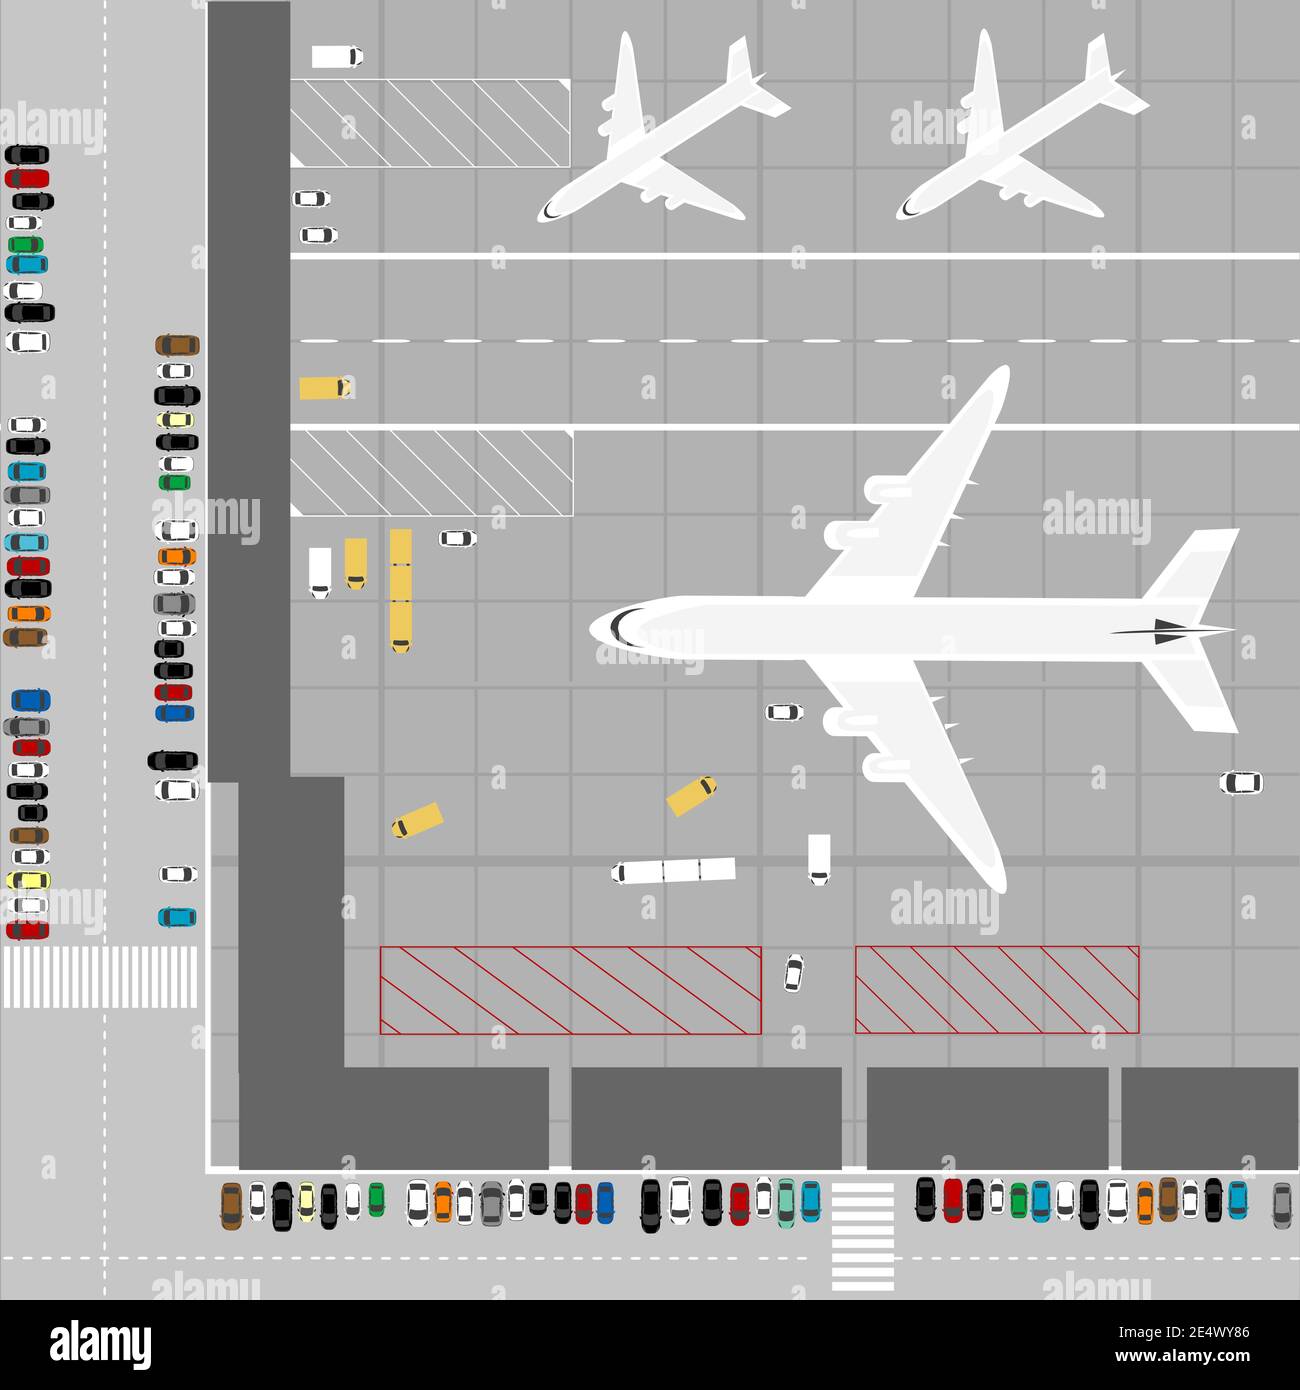 Illustration De Cartes De Piste D'avion D'aéroport Avec Défi De Labyrinthe  De Route Pour Tapis De Jeu Pour Enfants Et Tapis De Rouleau